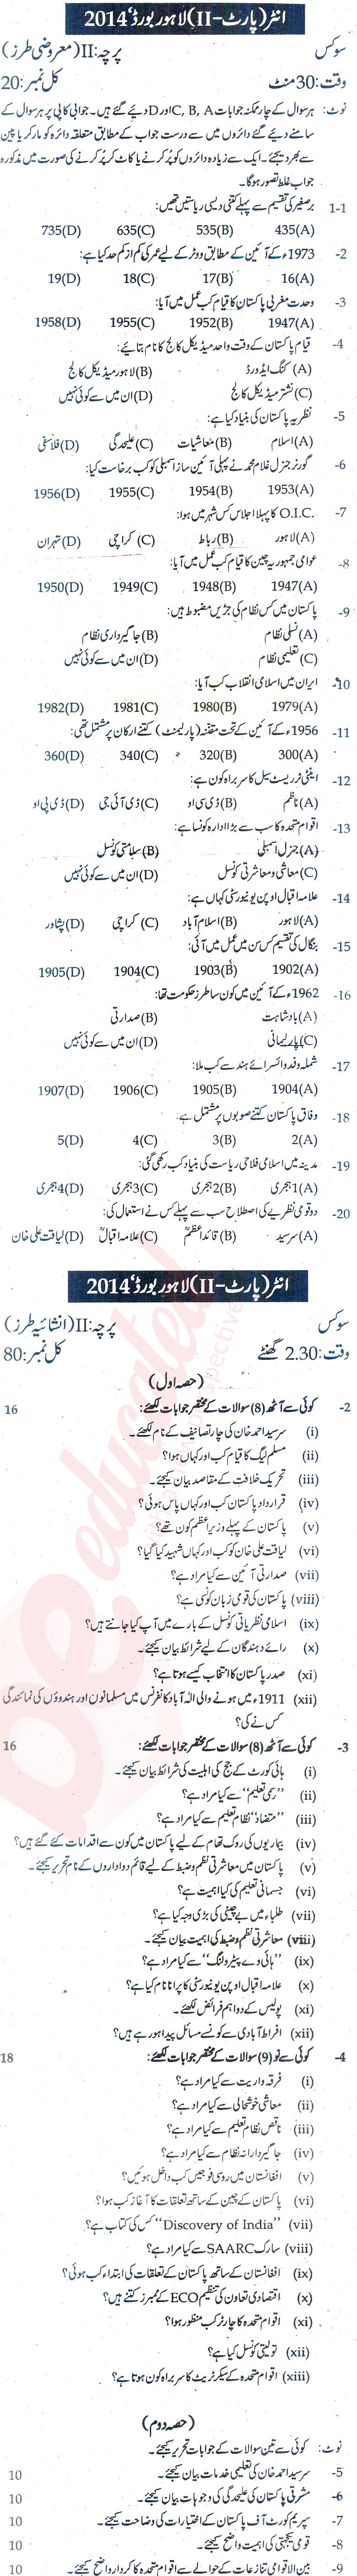 Civics FA Part 2 Past Paper Group 1 BISE Lahore 2014